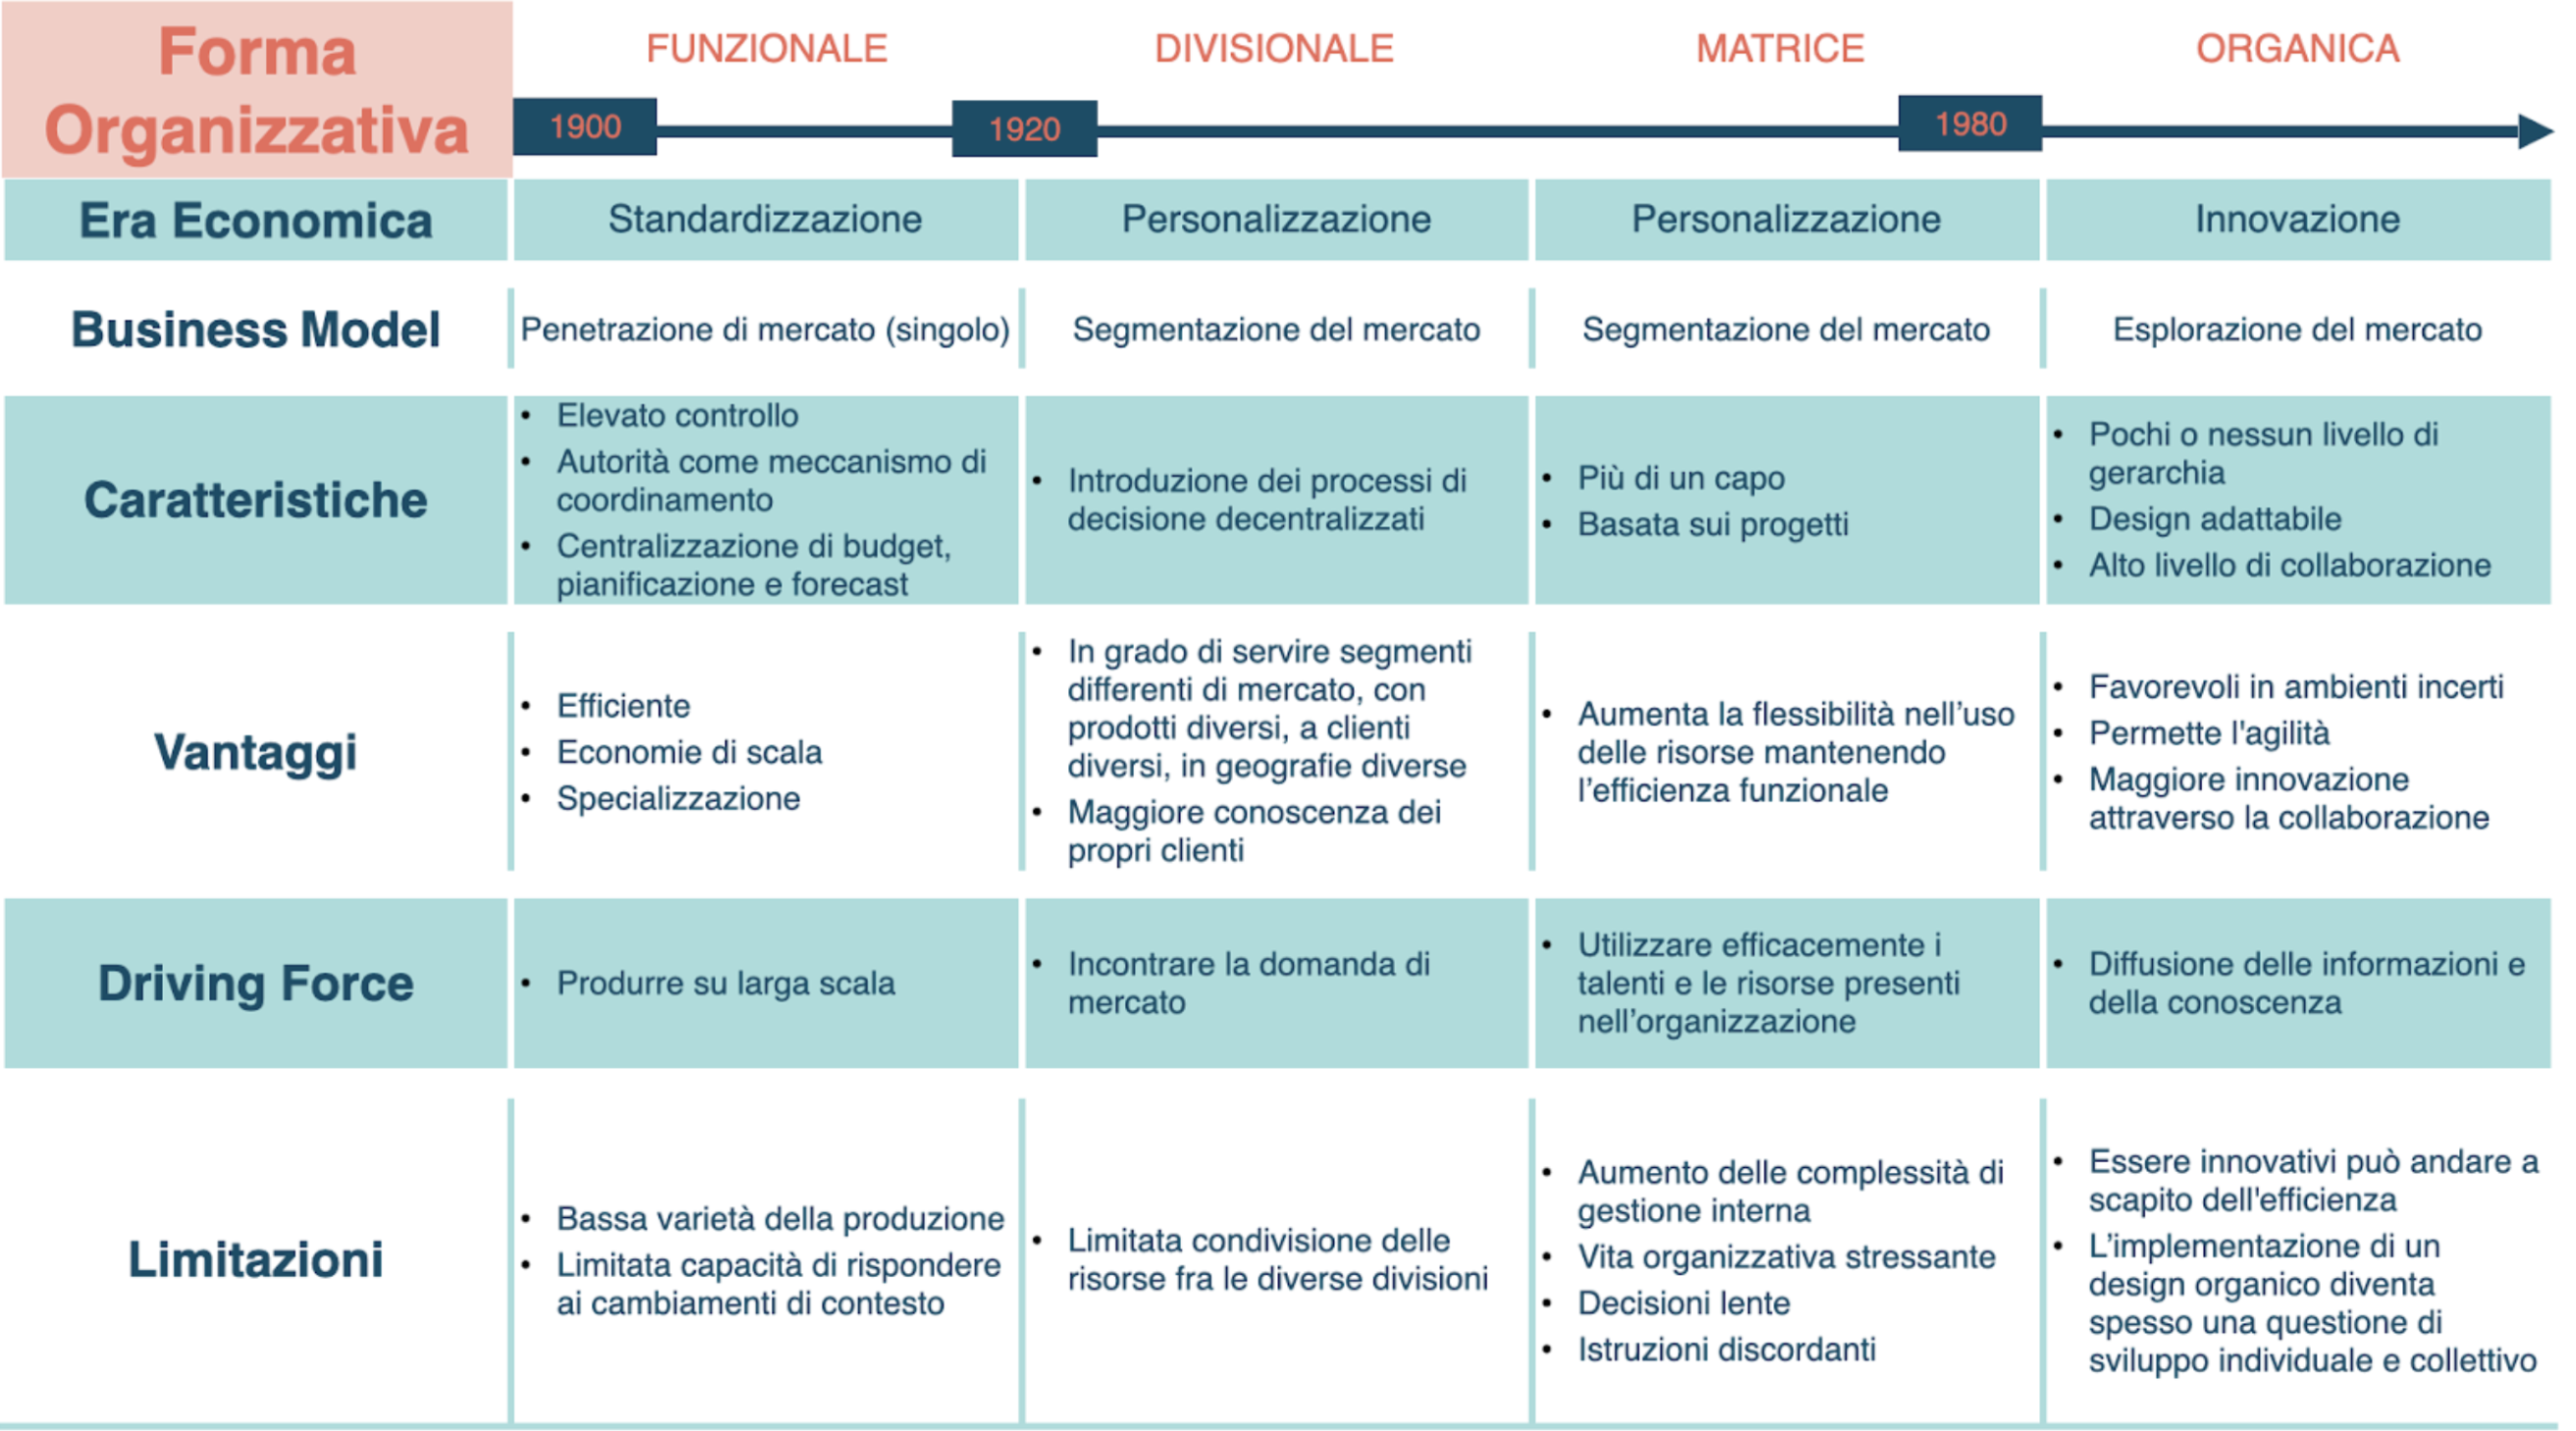 Schema che riassume le diverse tipologie di forme organizzative